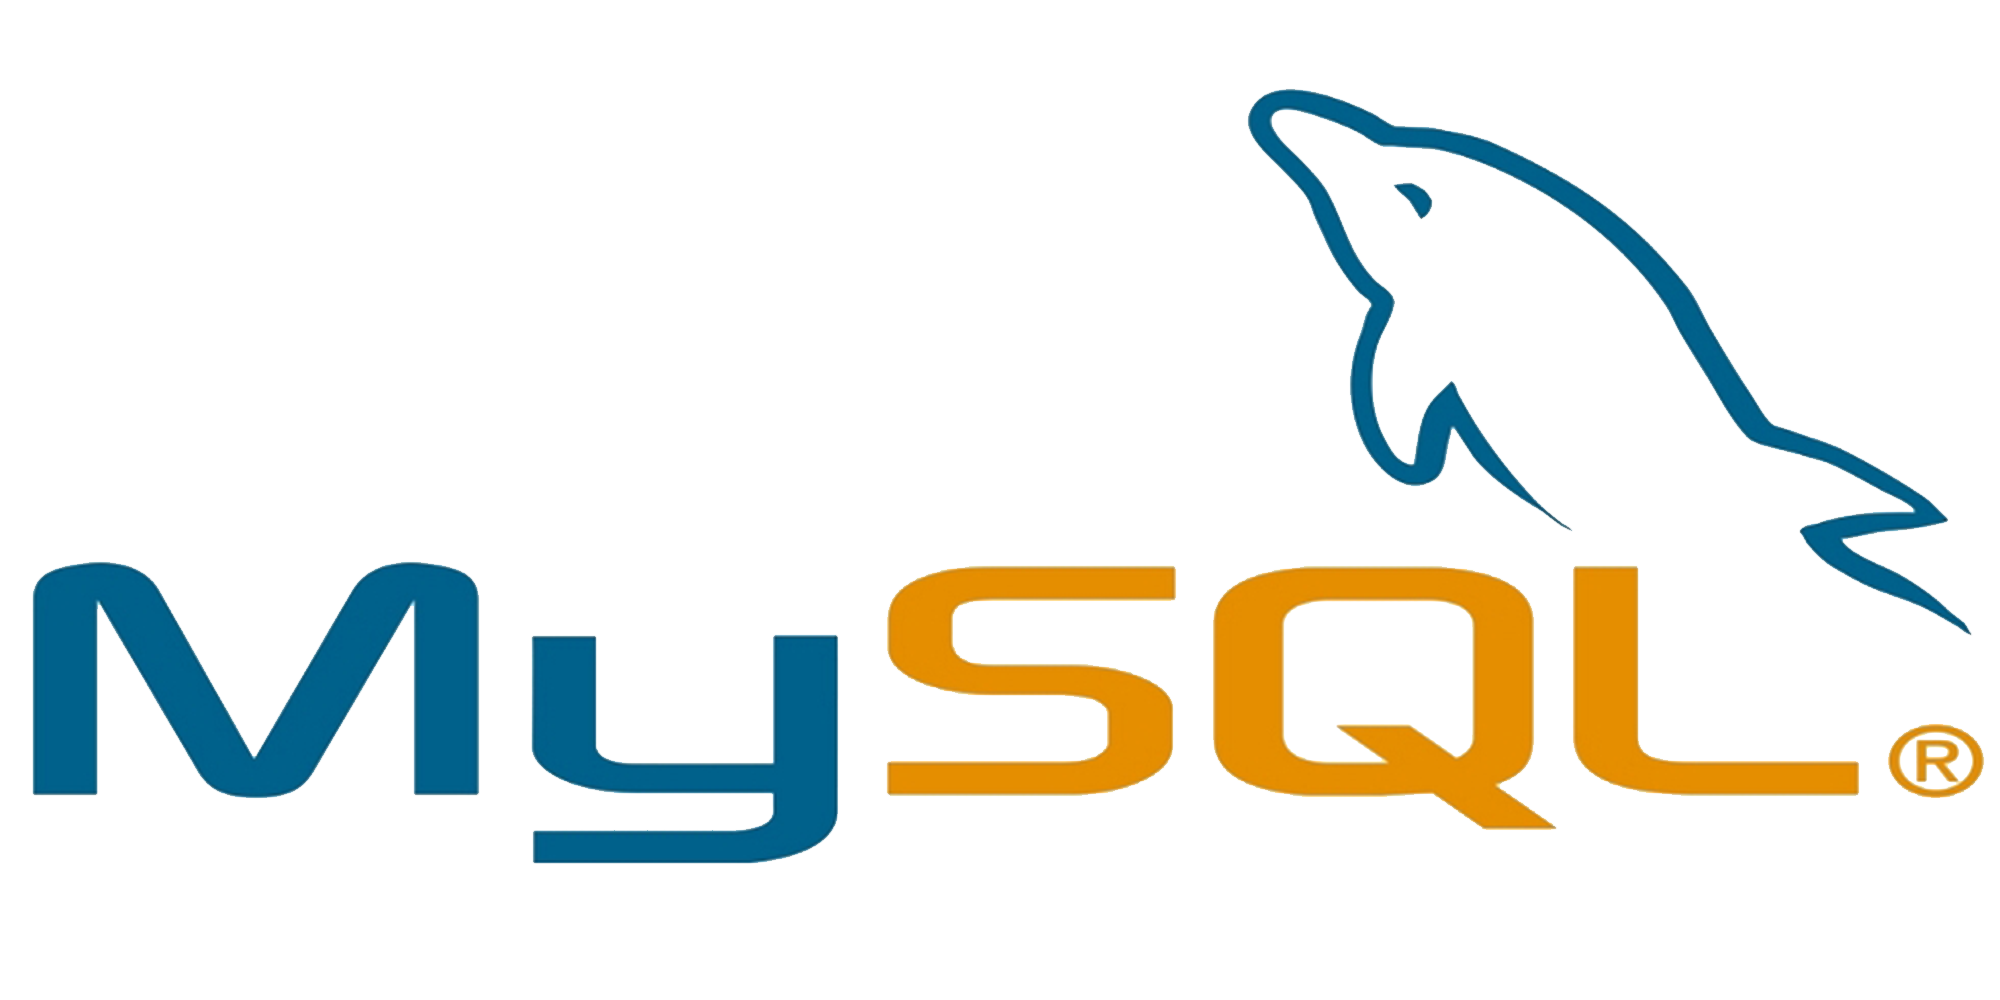 Эмблема MYSQL. MYSQL иконка. СУБД MYSQL. MYSQL логотип PNG. Mysql2